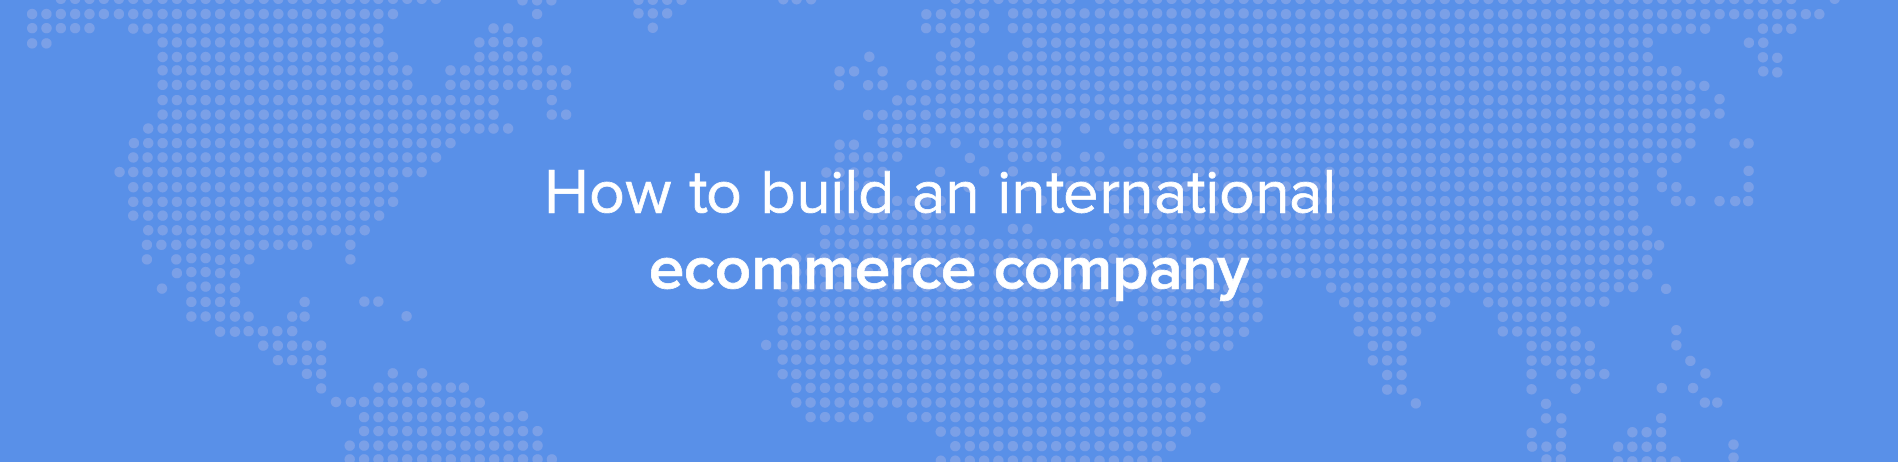 Come costruire un'azienda di e-commerce internazionale